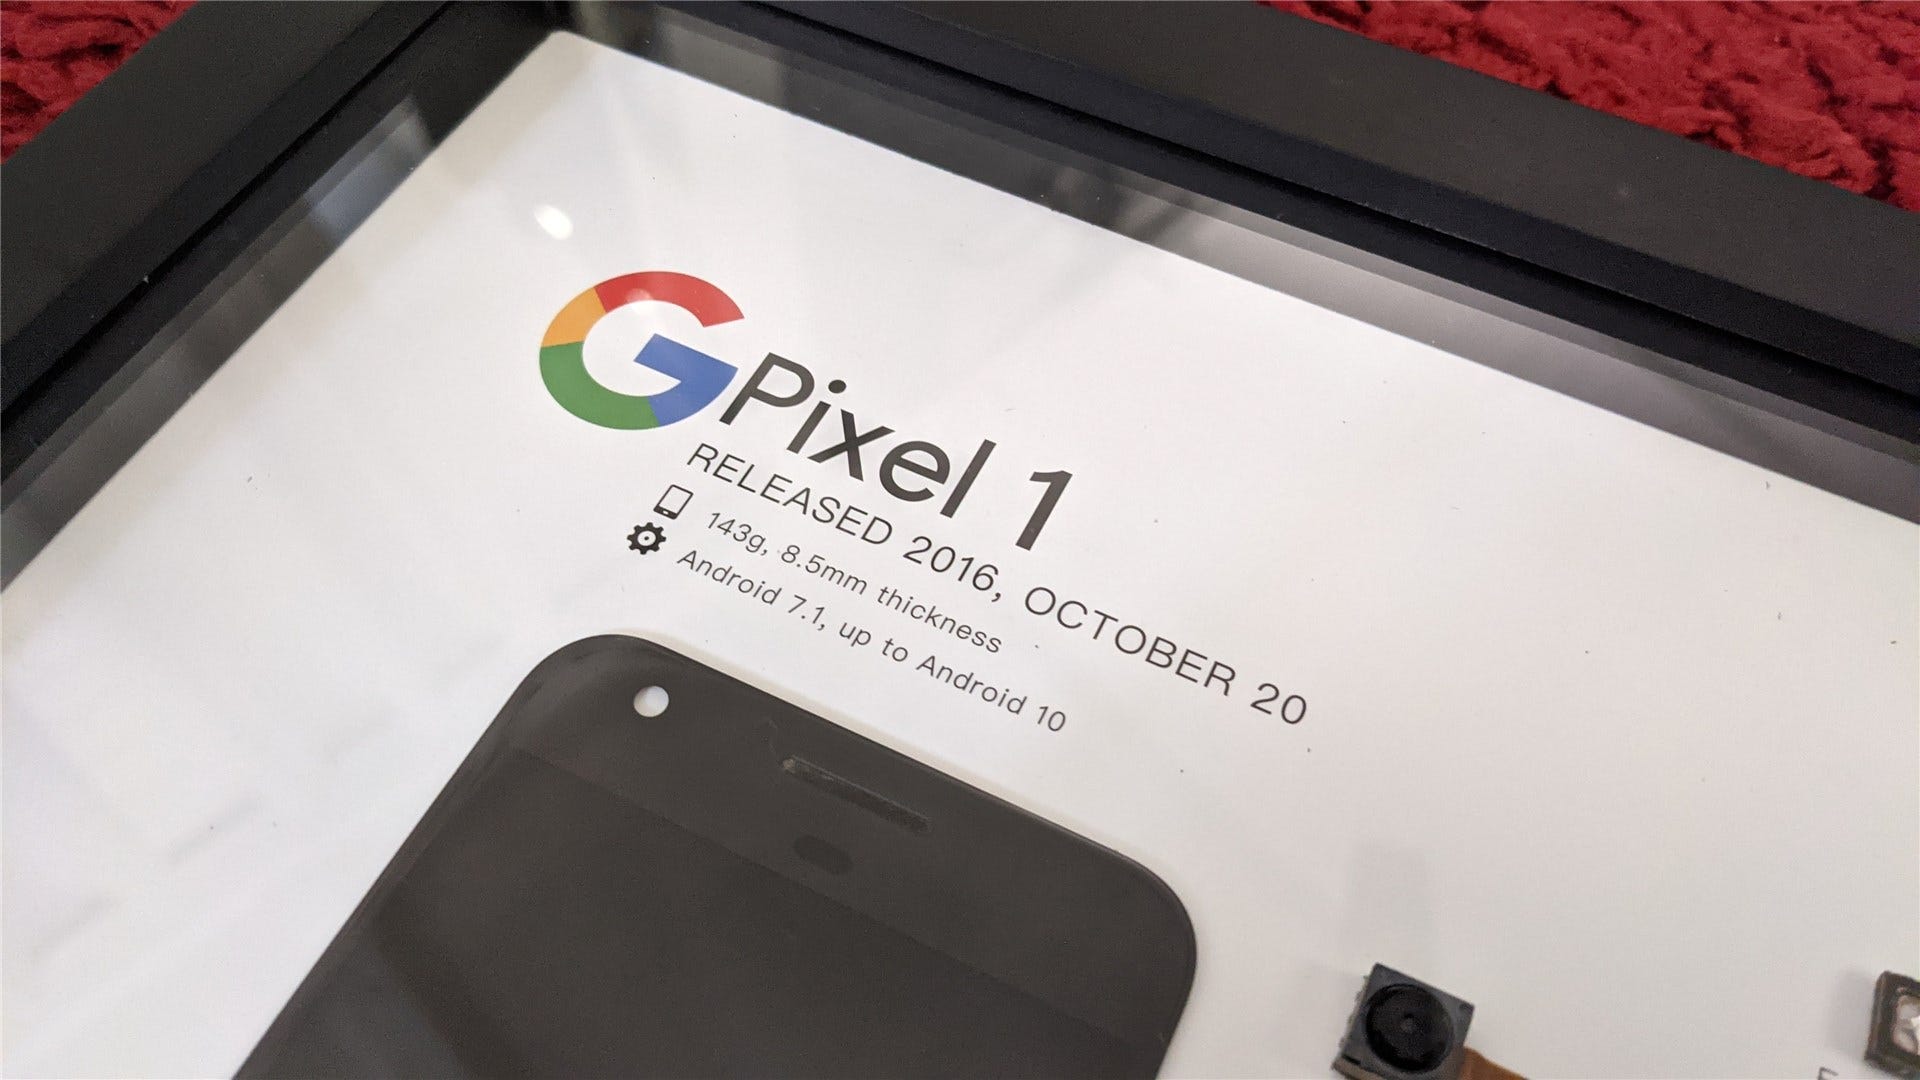 Cận cảnh Pixel 1 thông tin chi tiết, bao gồm ngày phát hành và các phiên bản Android